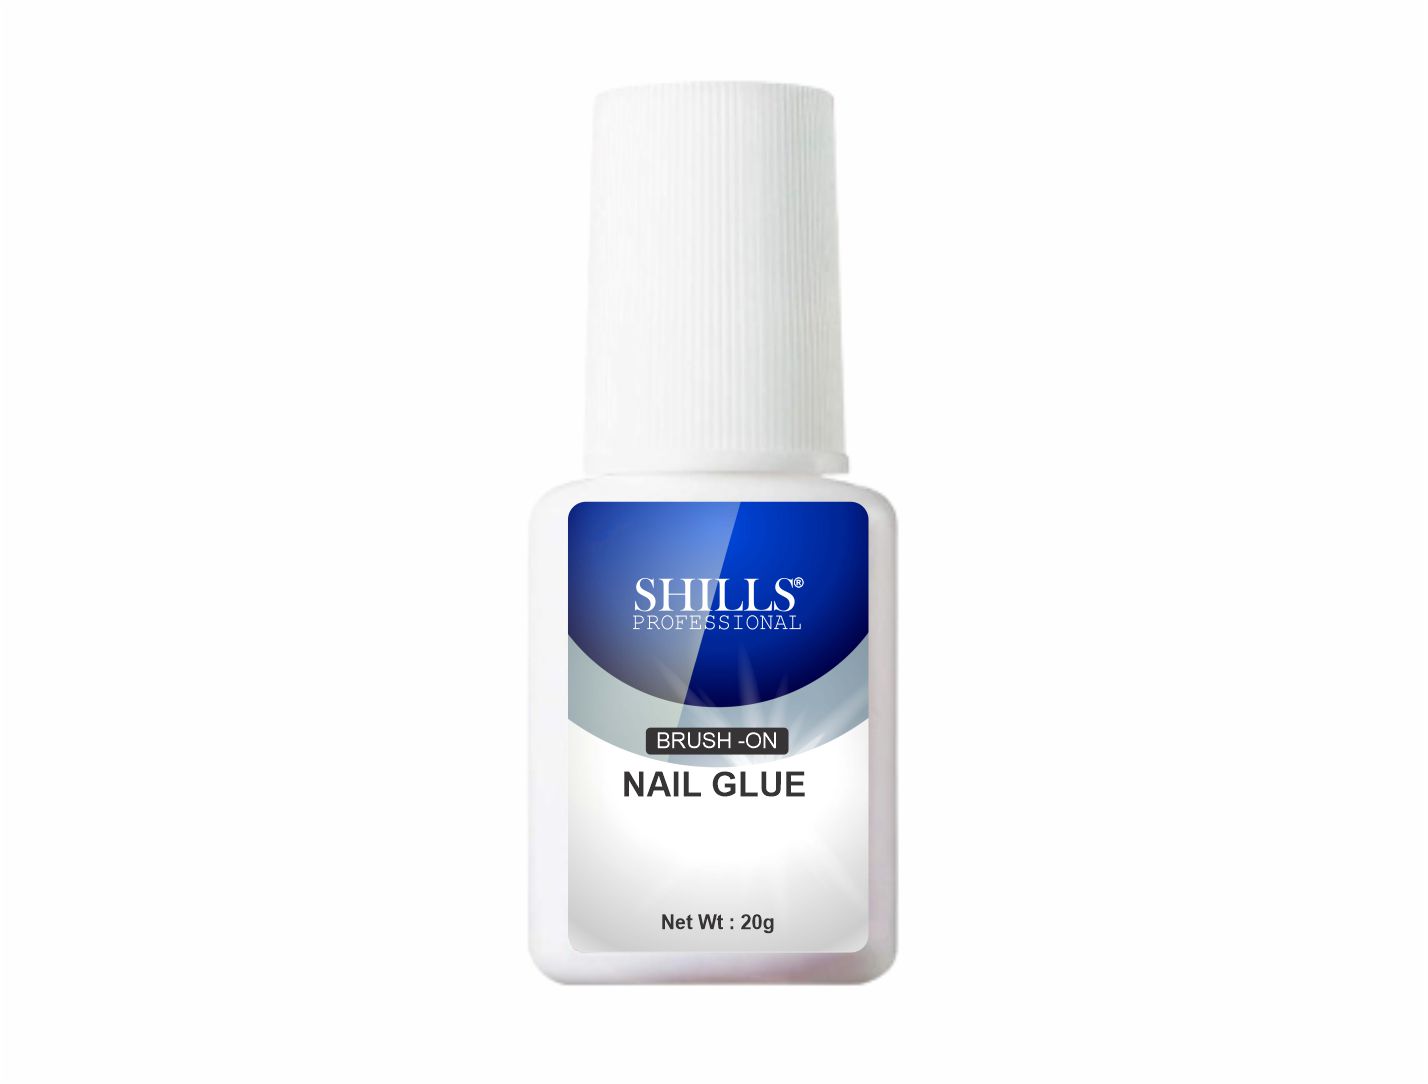 SOSU Cosmetics Brush-On Nail Glue